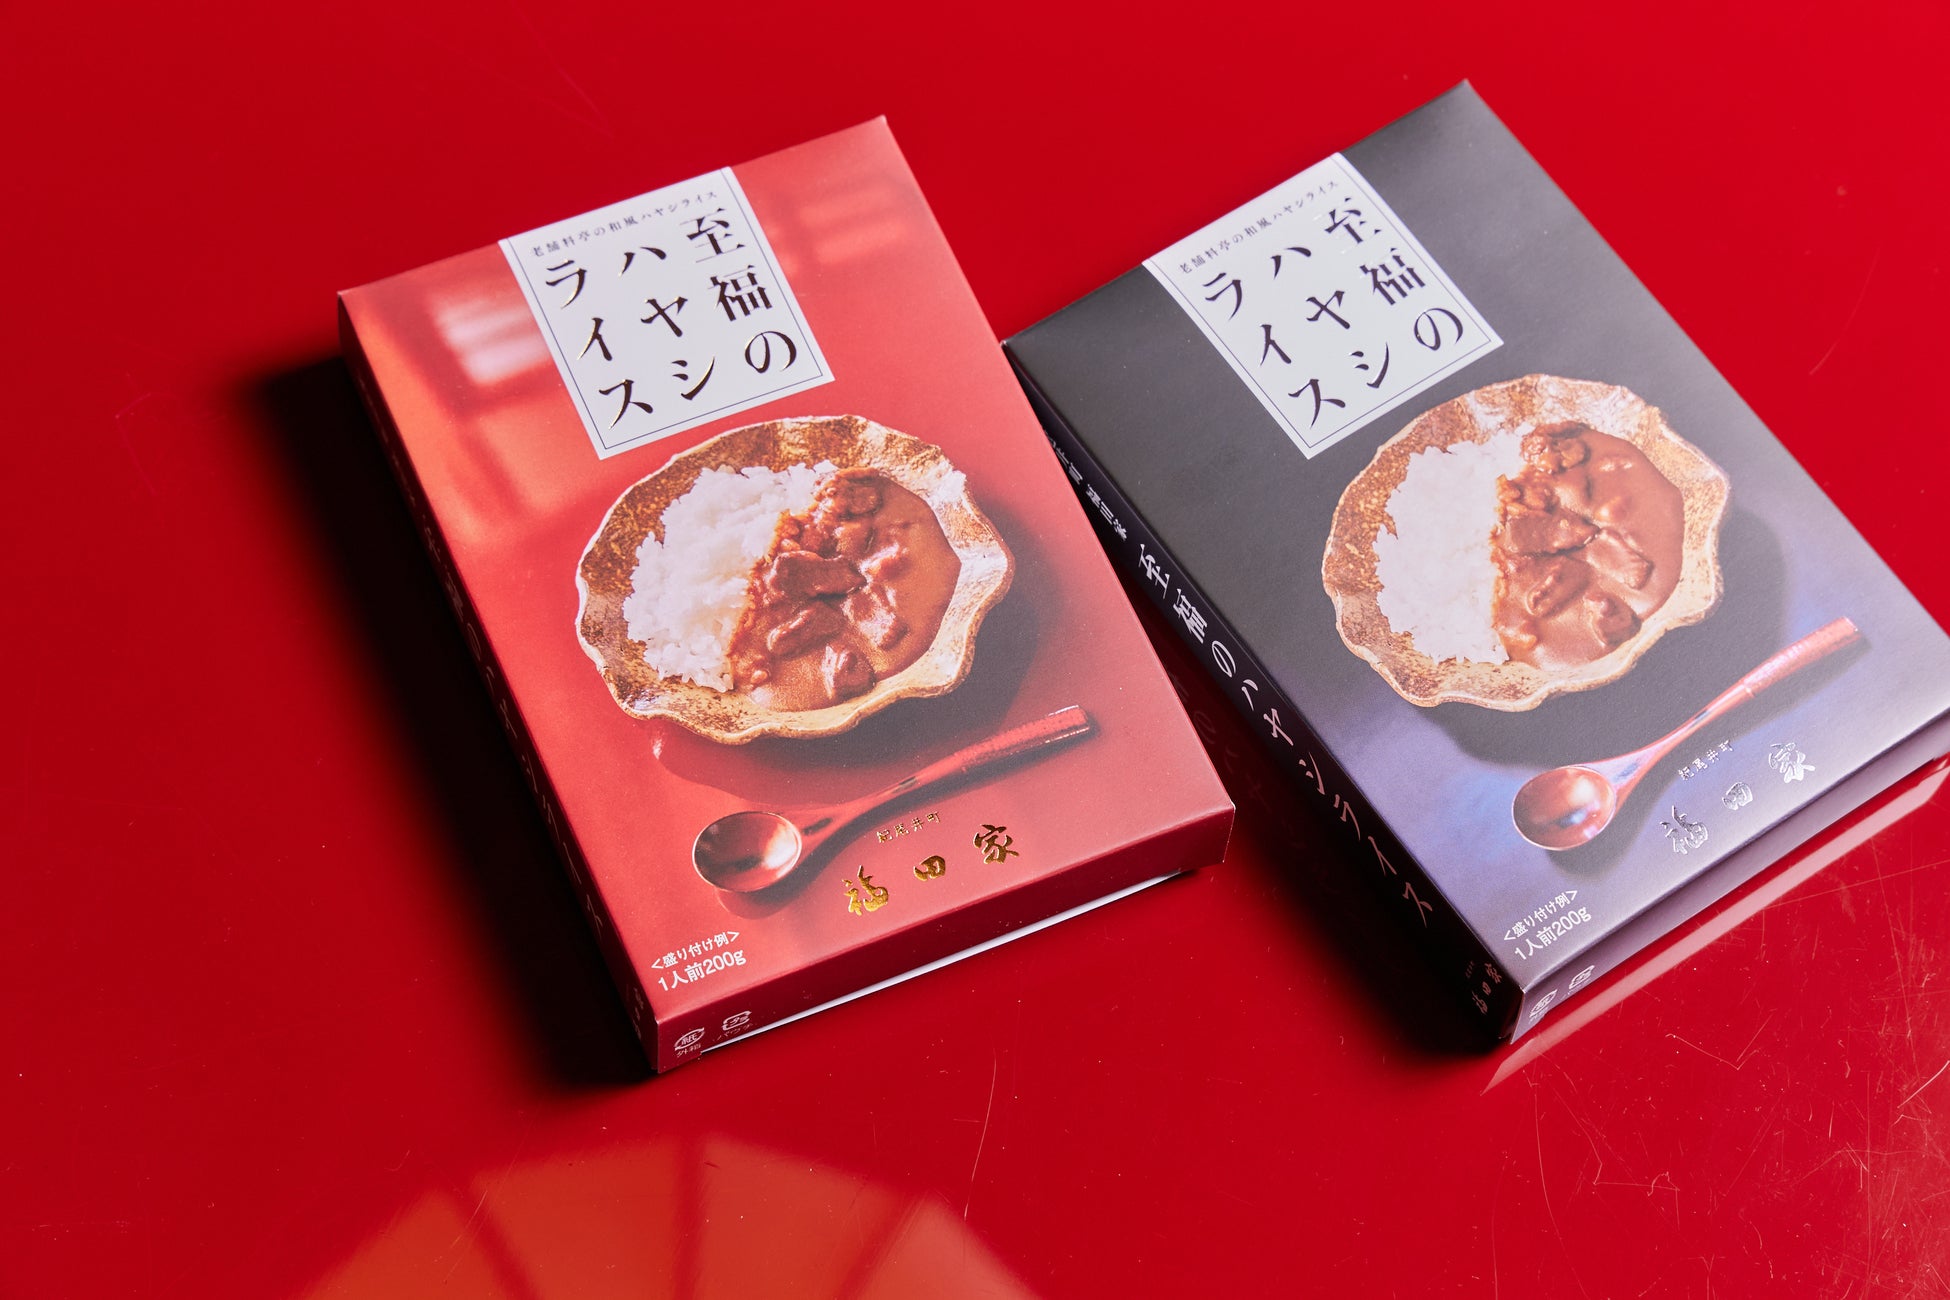 昭和14年創業、ミシュラン二つ星の日本料理店「紀尾井町 福田家」が家庭で楽しめる「至福のハヤシライス」を6月2日より販売開始、父の日ギフトにも